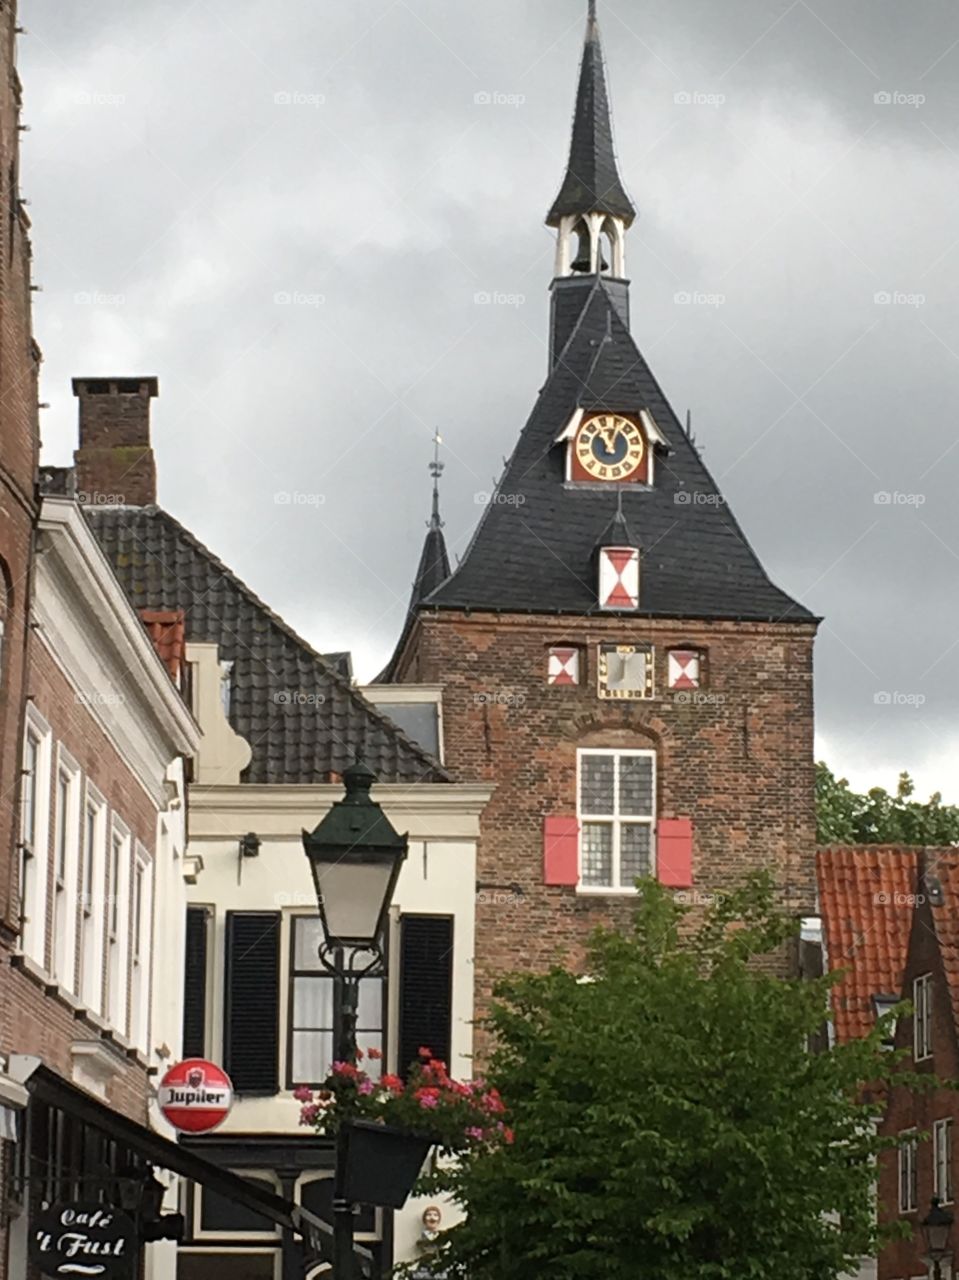 Tower "Lekpoort" in Vianen Holland